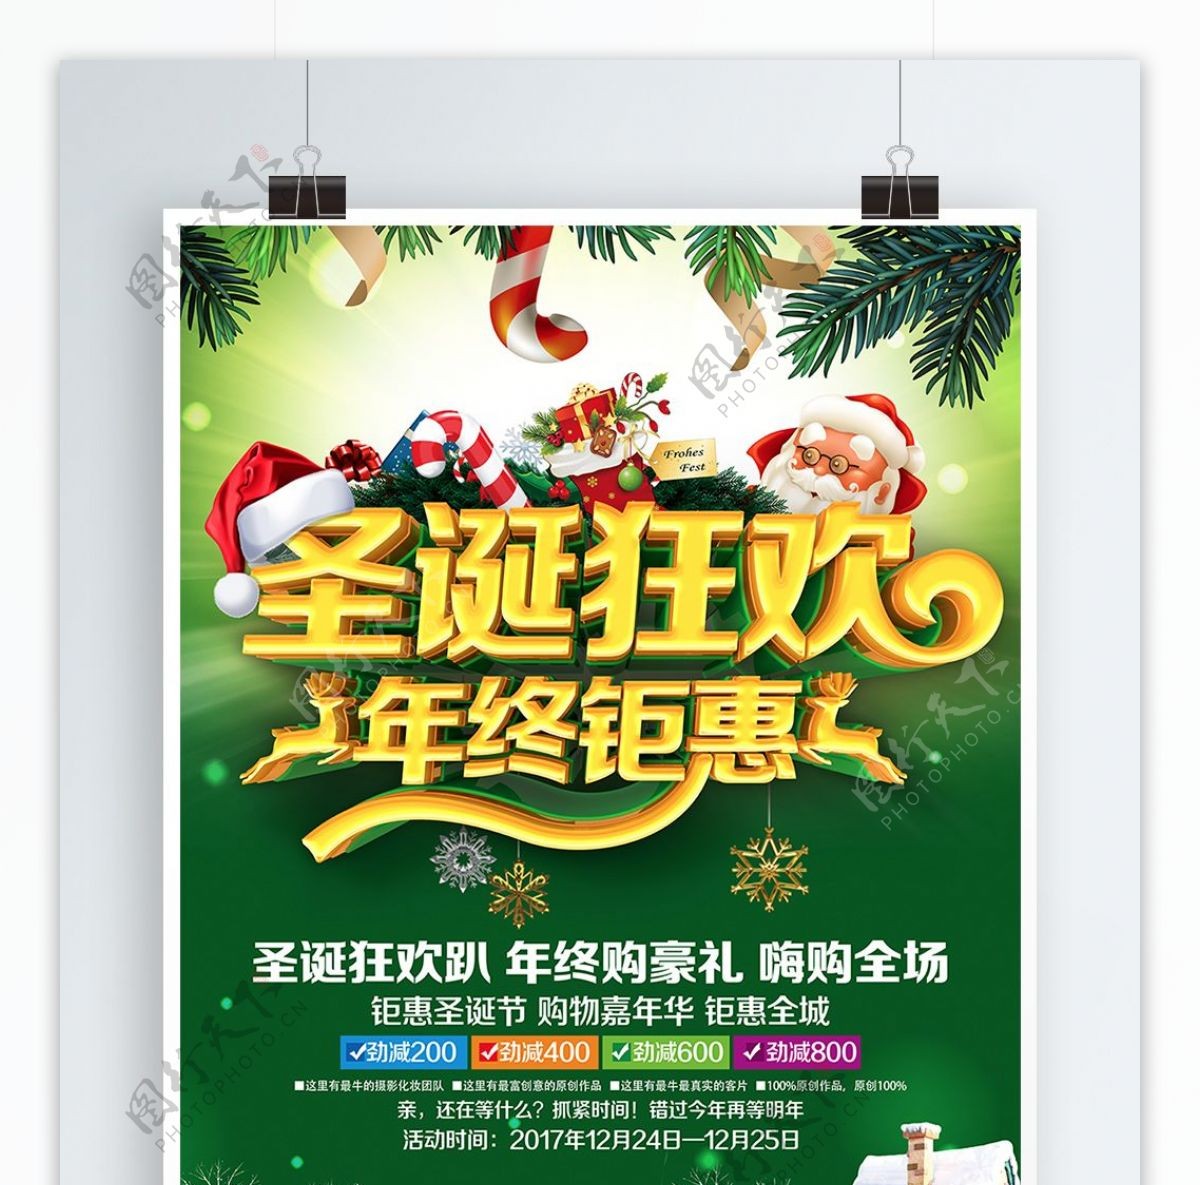 C4D精品渲染圣诞狂欢圣诞节促销主题海报